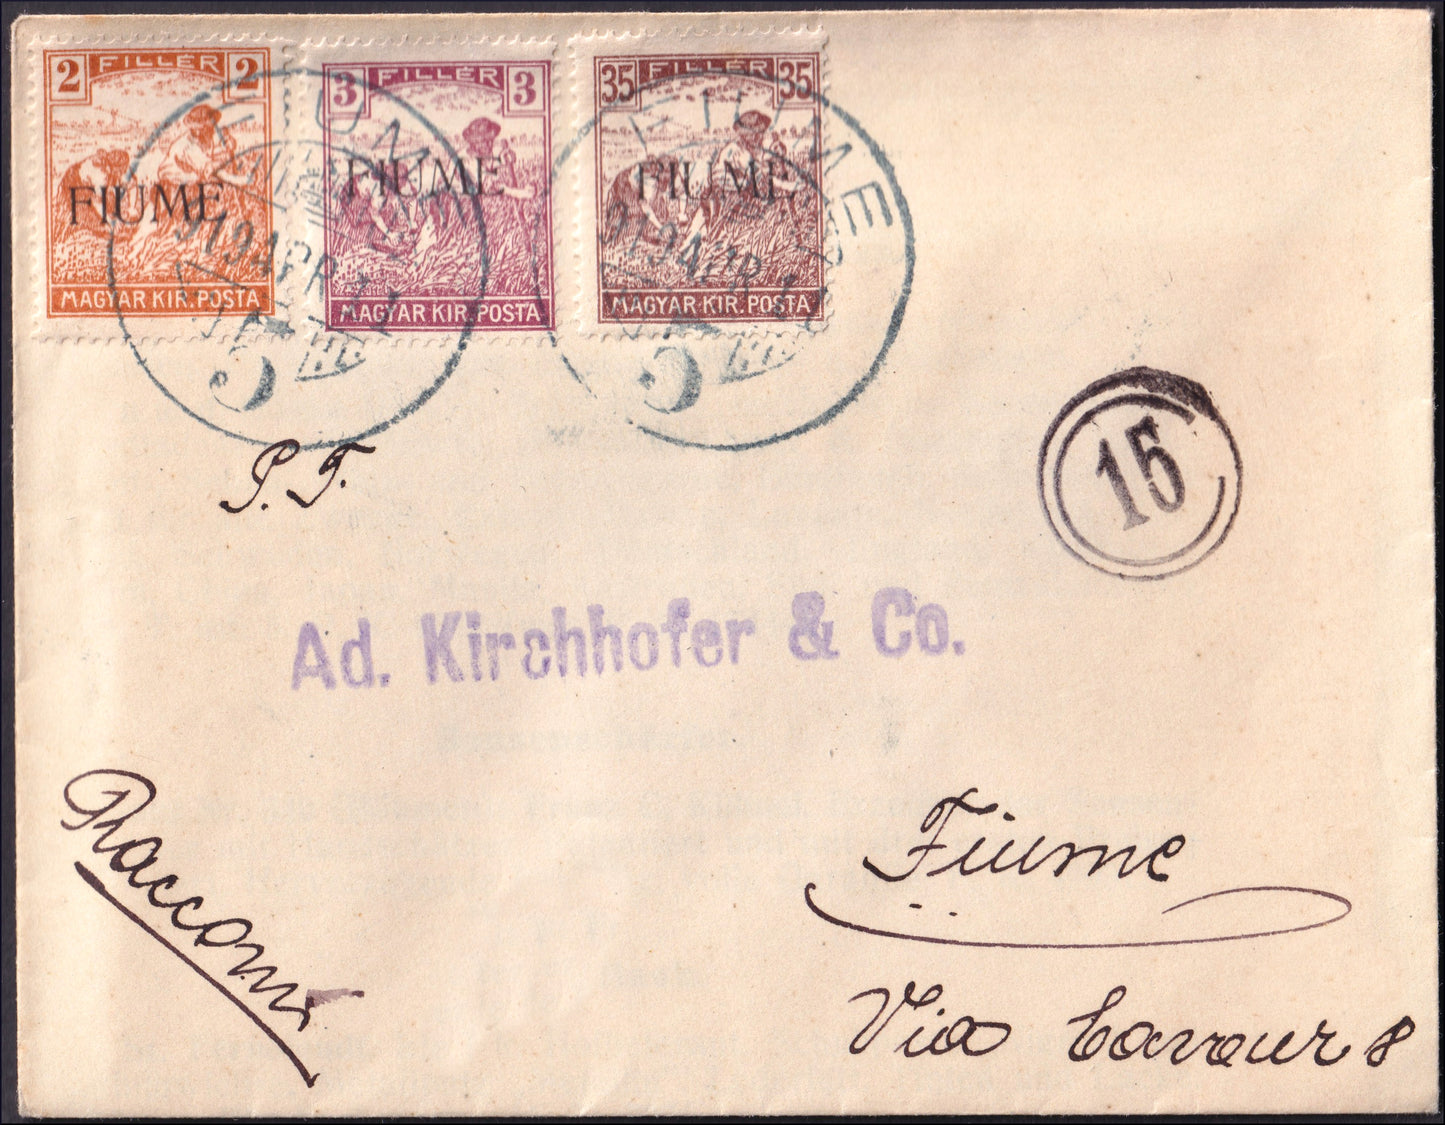 FiumeSP41 - 1918 - Carta estampada con húngaros sobreimpresos por máquina segadora 2 rellenos + 3 rellenos + 35 rellenos (4 + 5 + 12)